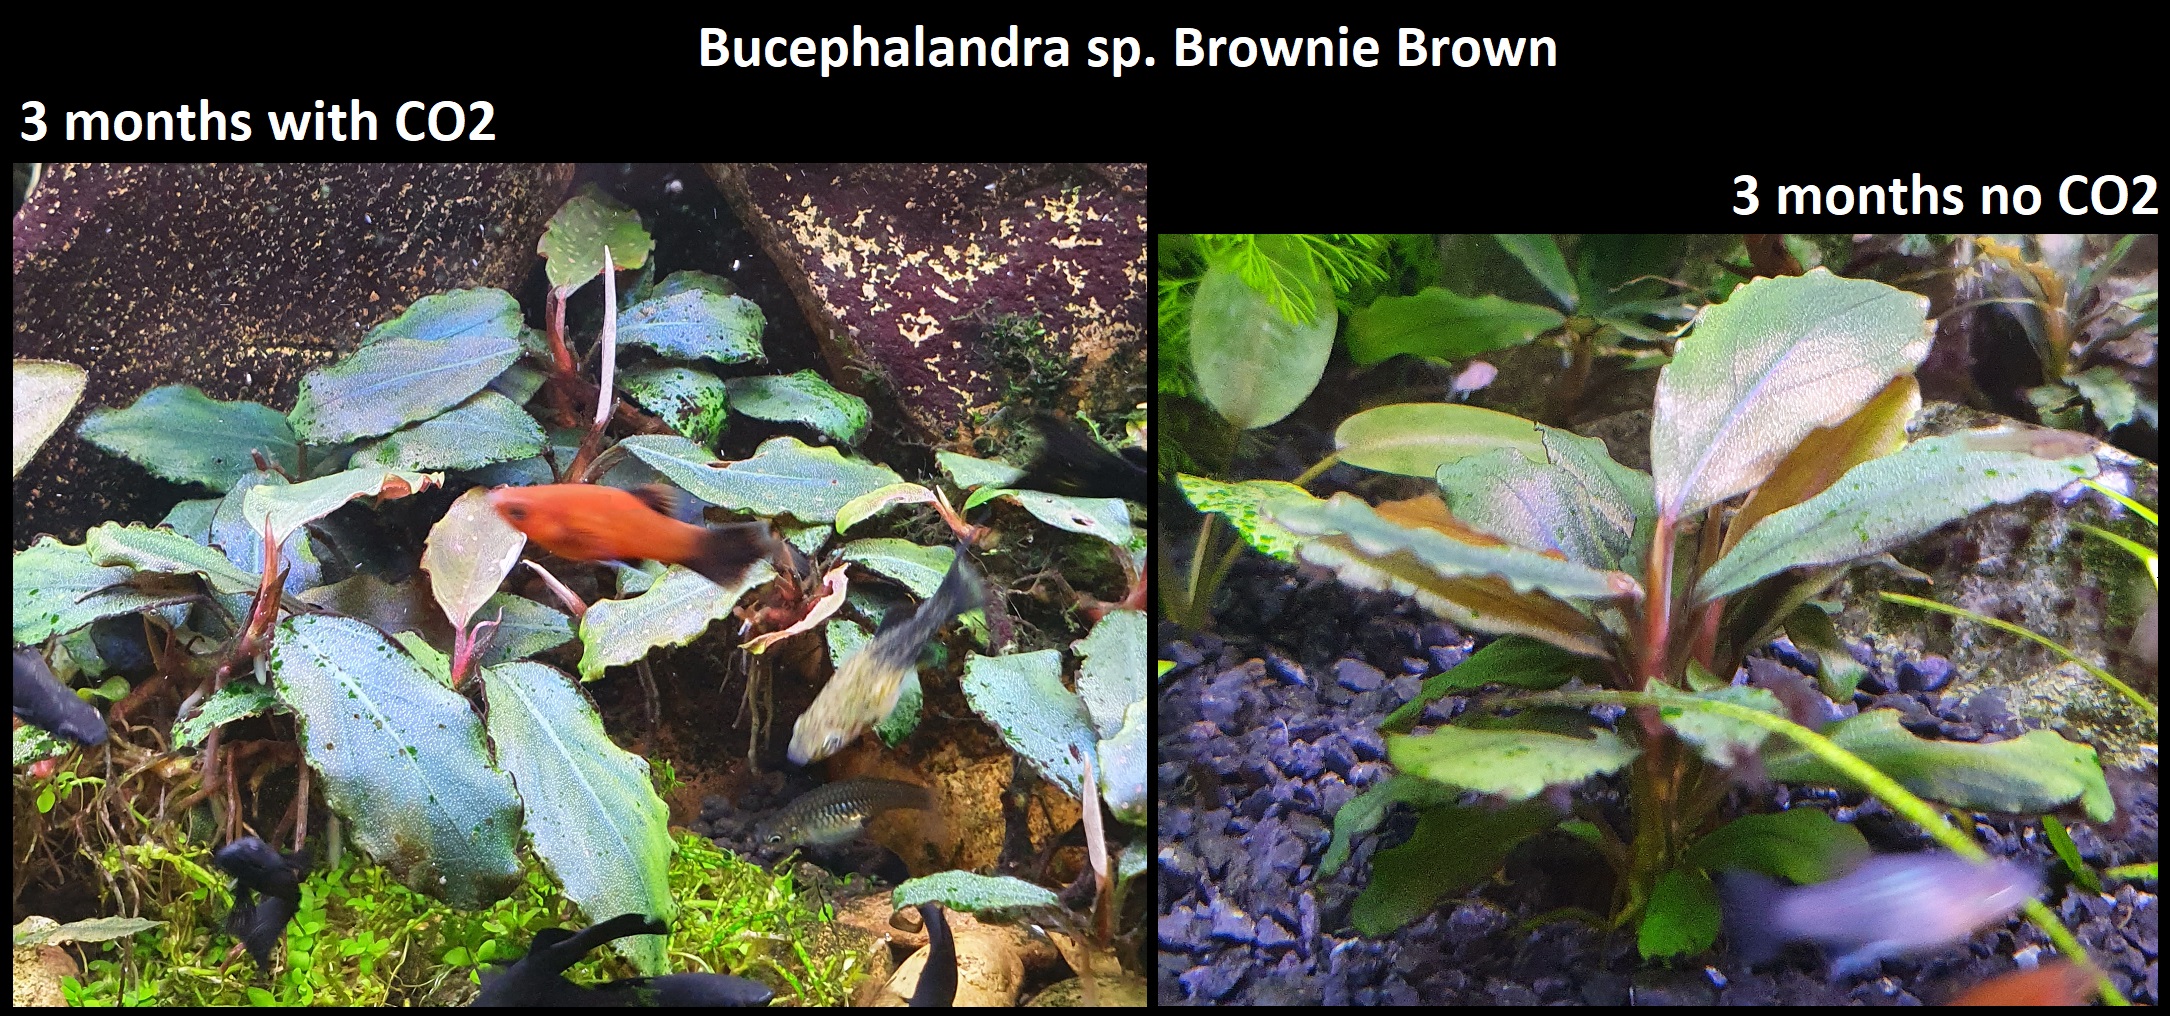 05. Bucephalandra sp. Brownie Brown.jpg